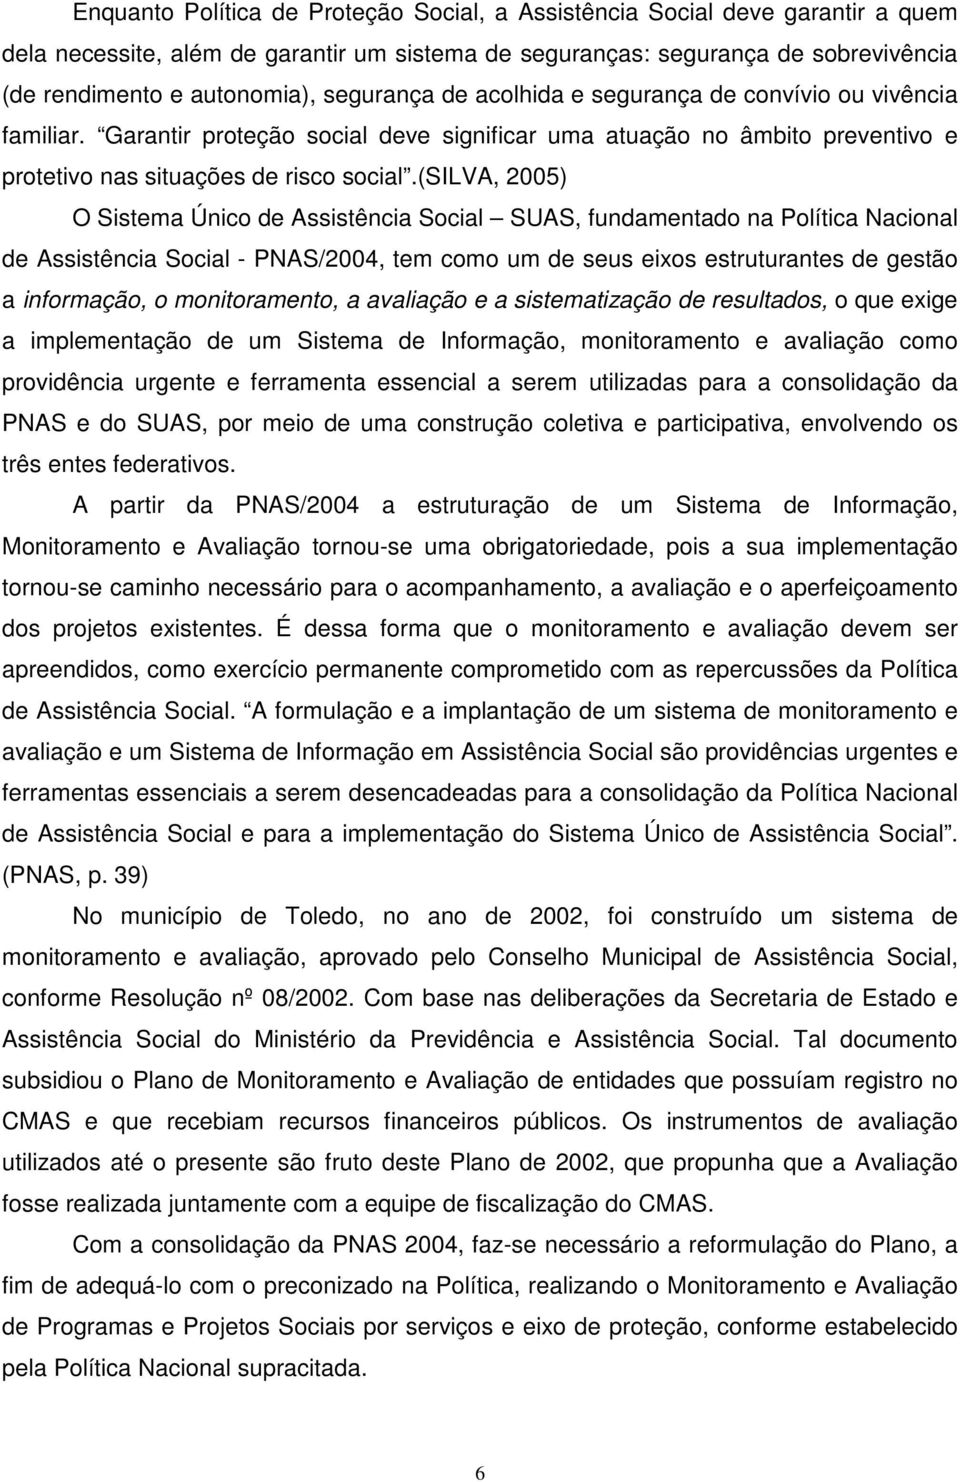 (silva, 2005) O Sistema Único de Assistência Social SUAS, fundamentado na Política Nacional de Assistência Social - PNAS/2004, tem como um de seus eixos estruturantes de gestão a informação, o